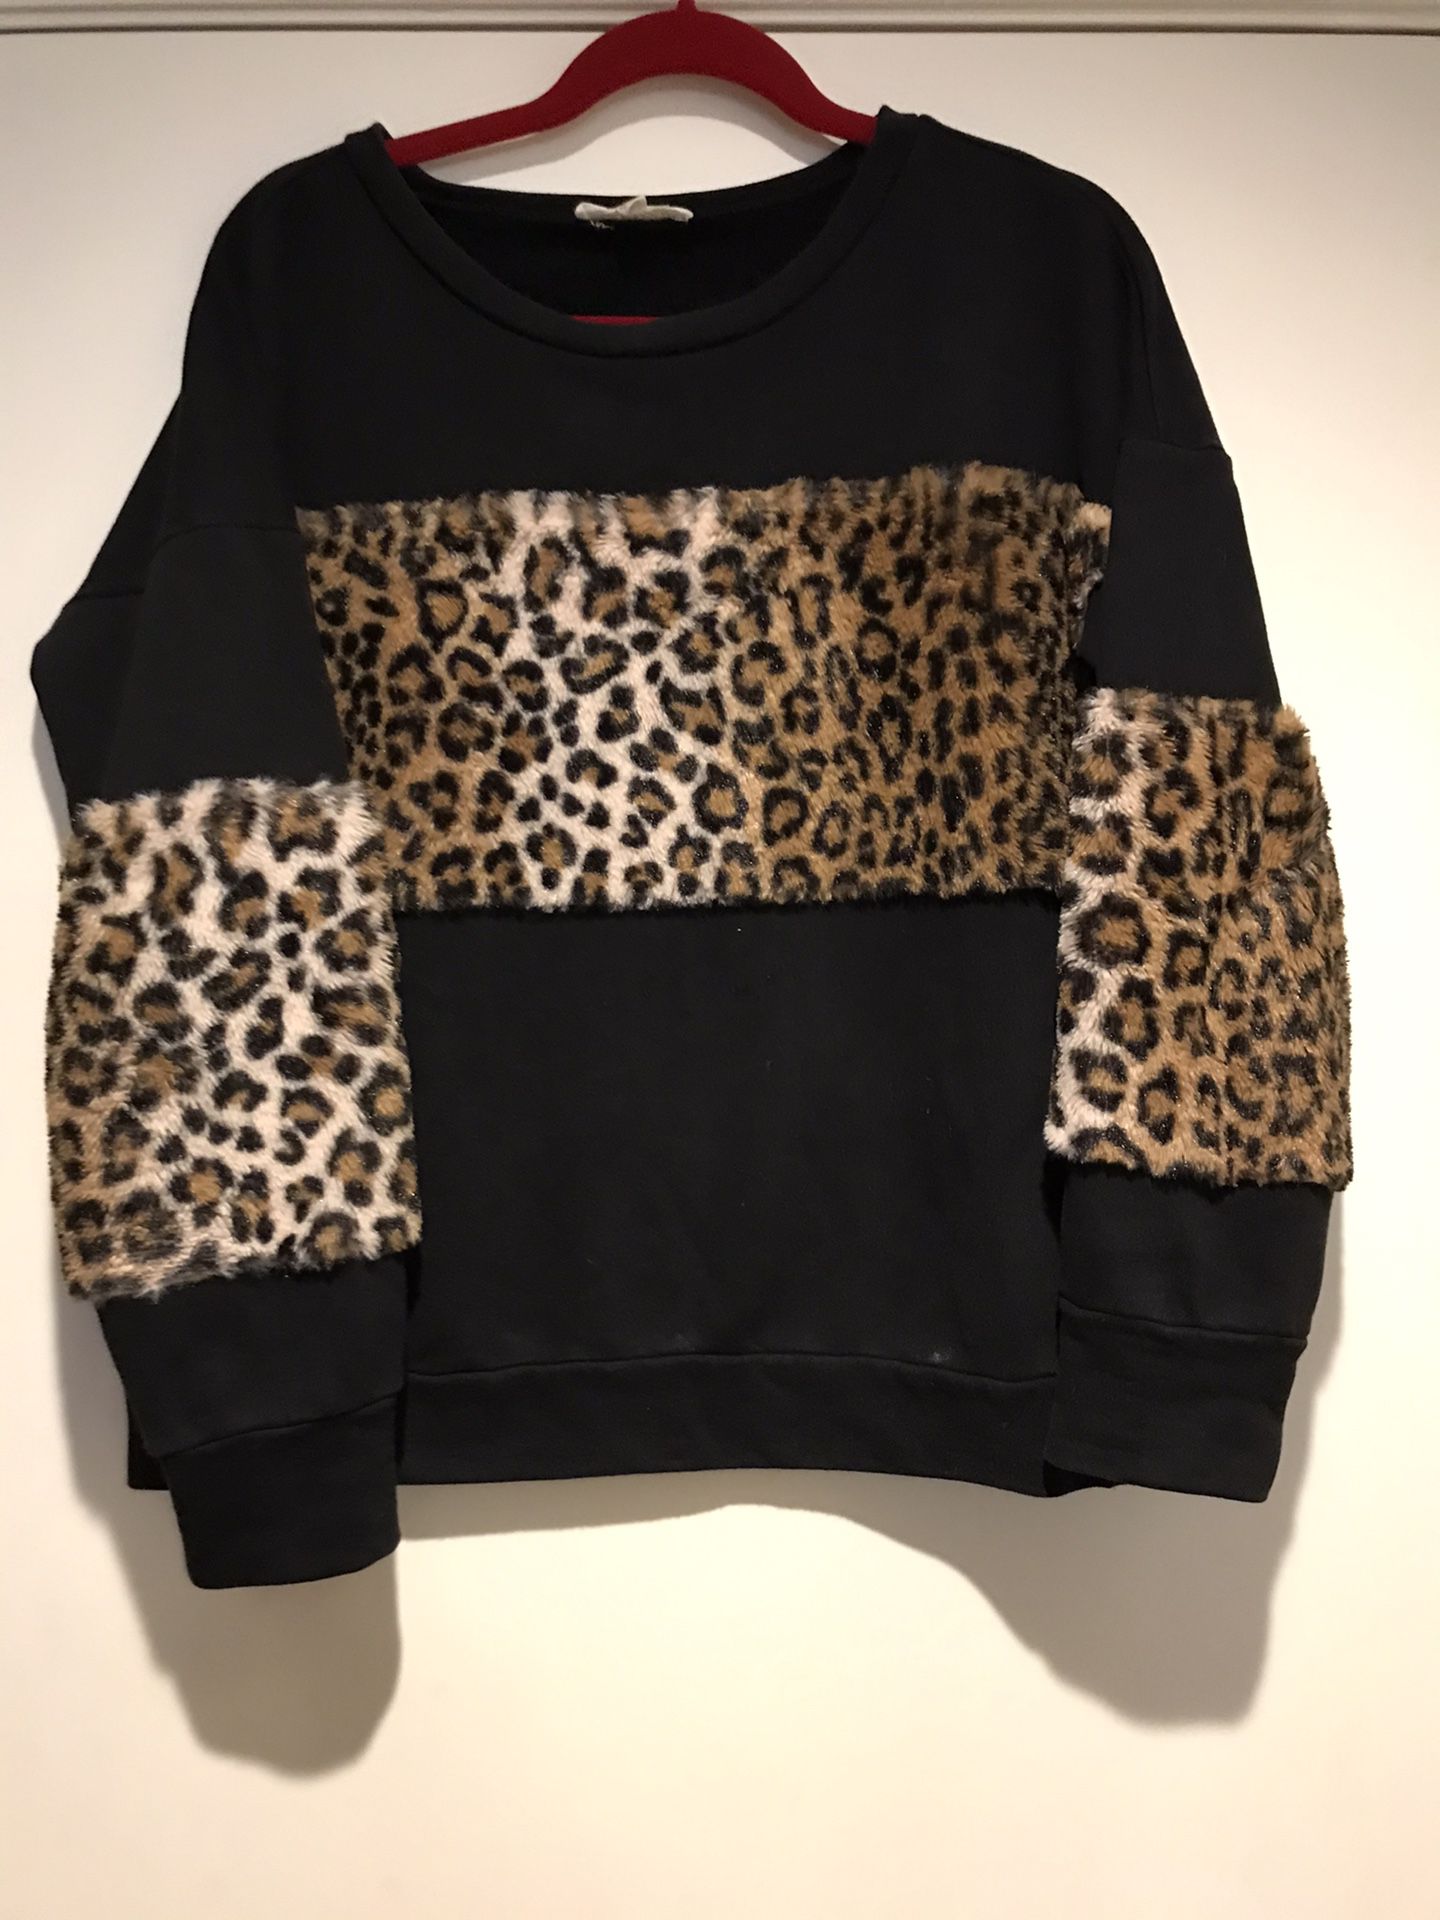 Boutique leopard sweat shirt size medium